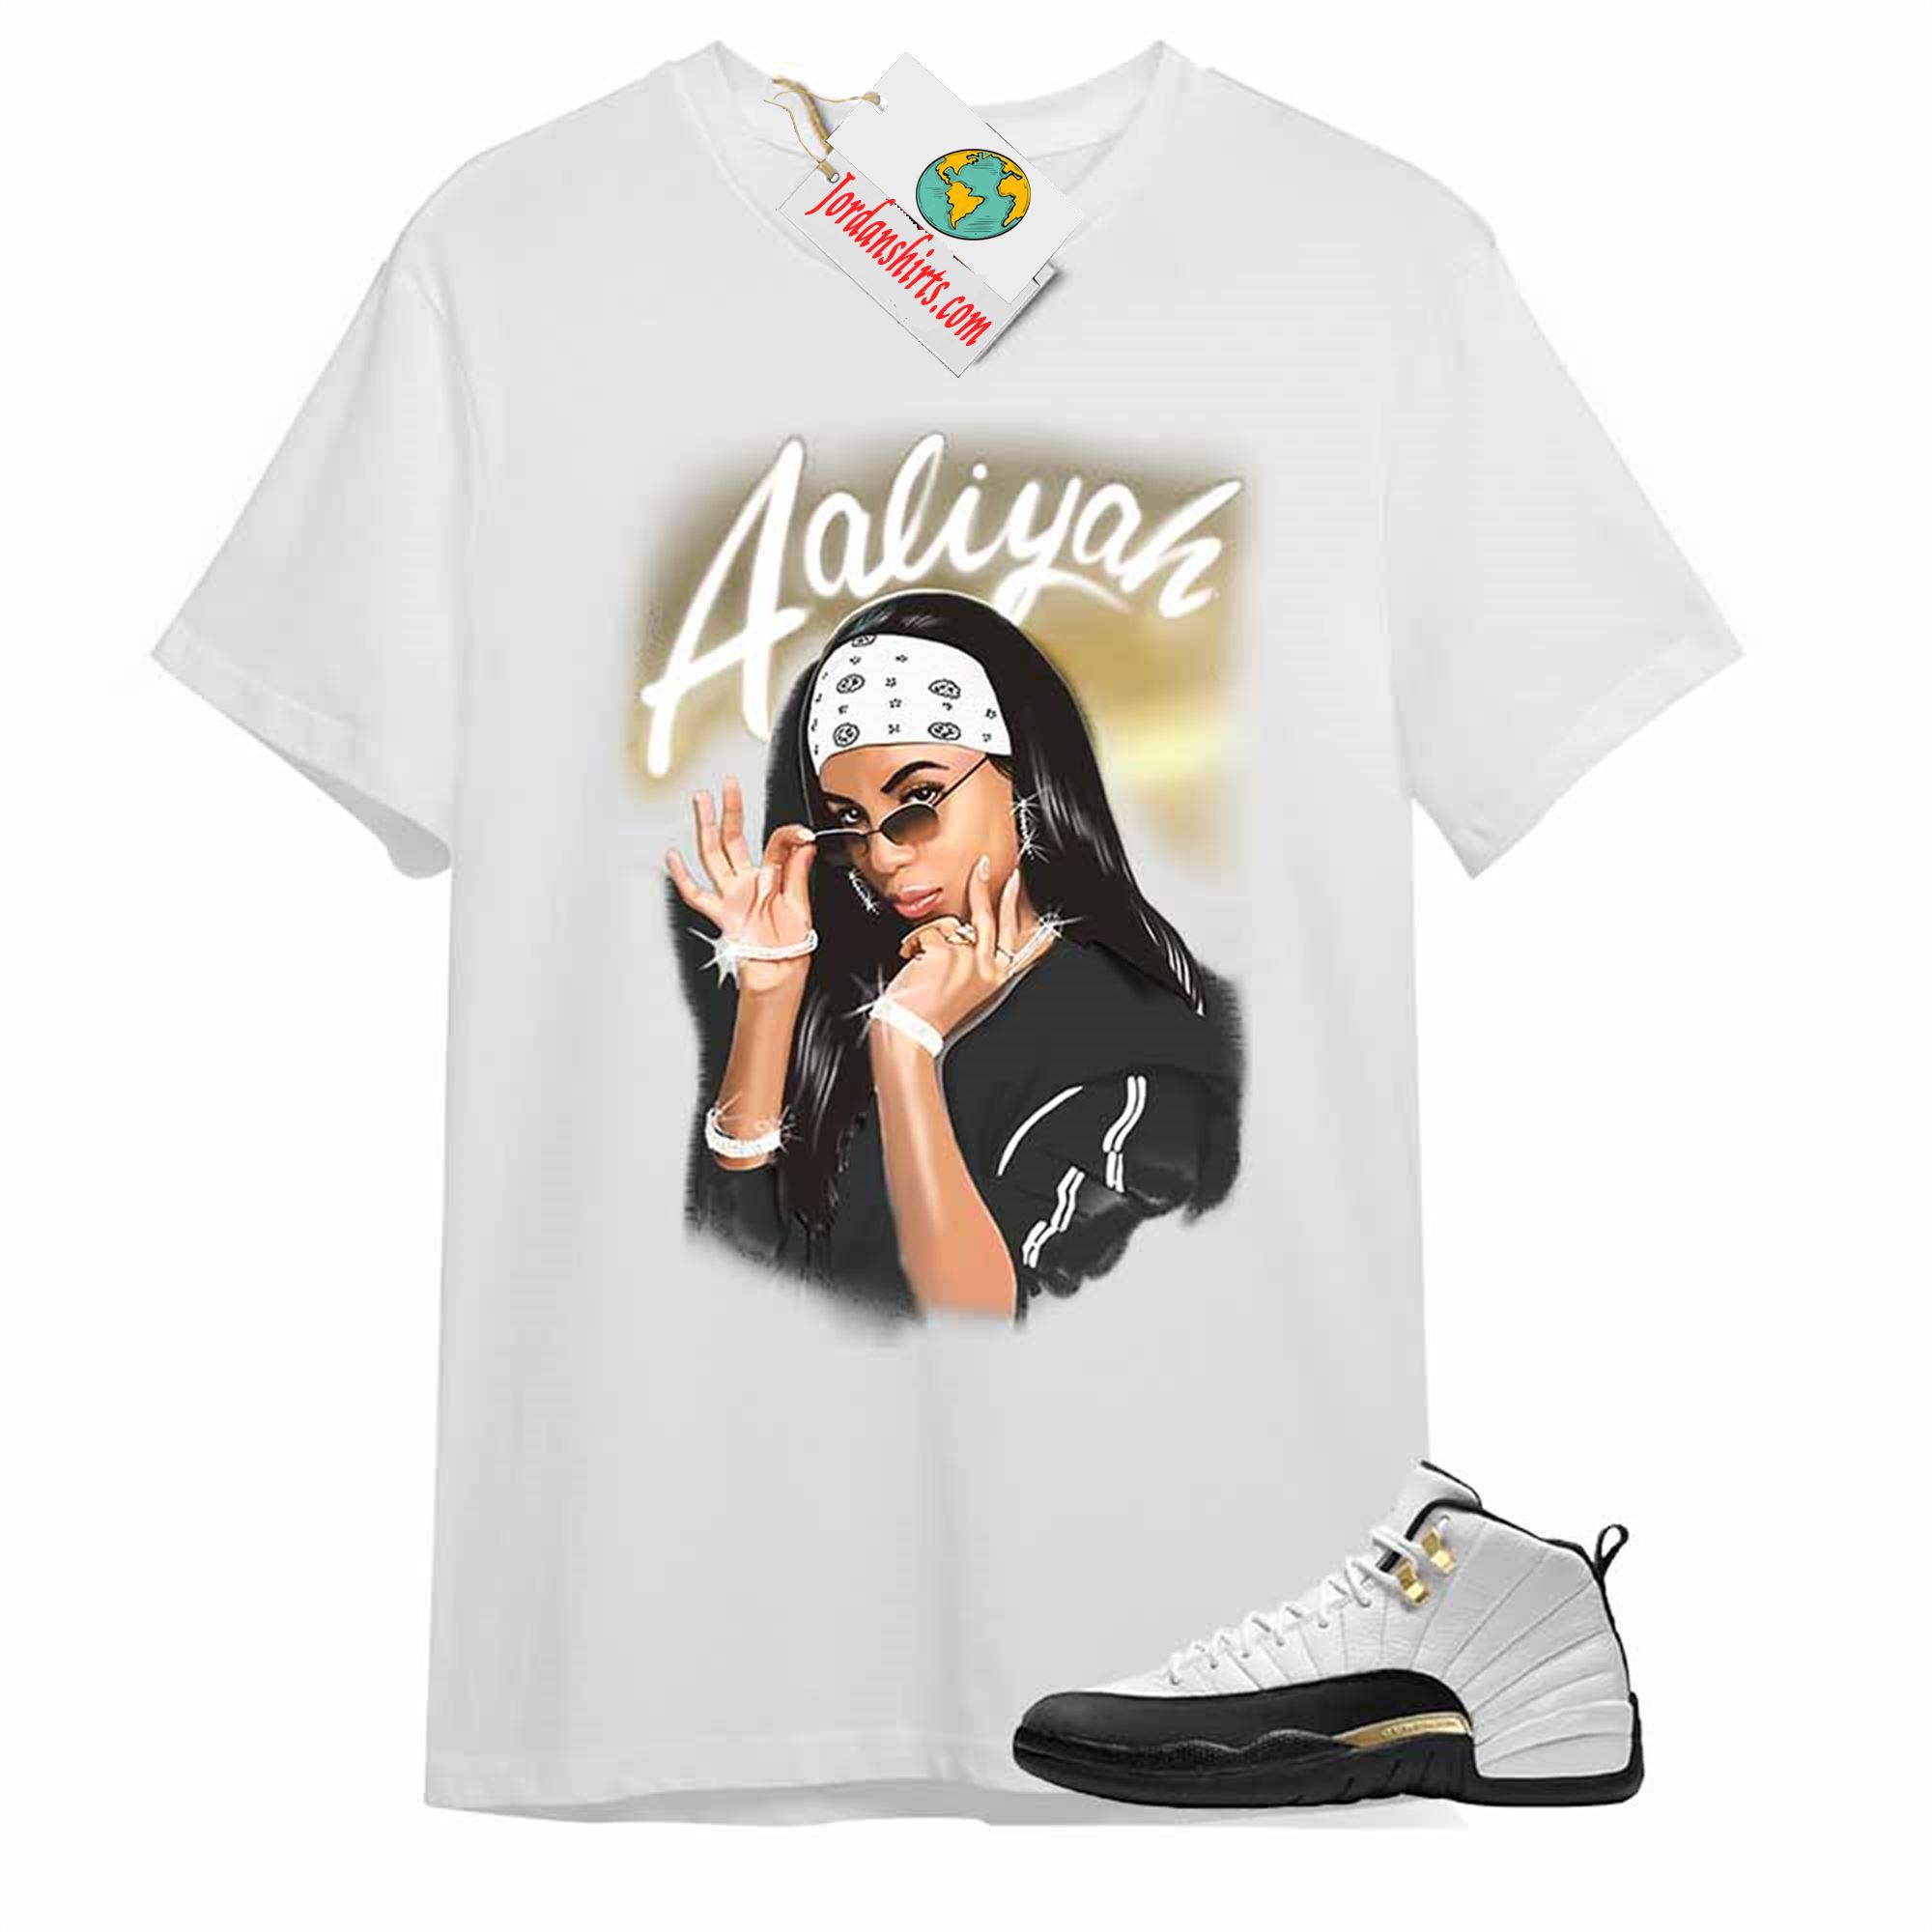 Jordan 12 Shirt, Aaliyah Airbrush White T-shirt Air Jordan 12 Royalty 12s Plus Size Up To 5xl